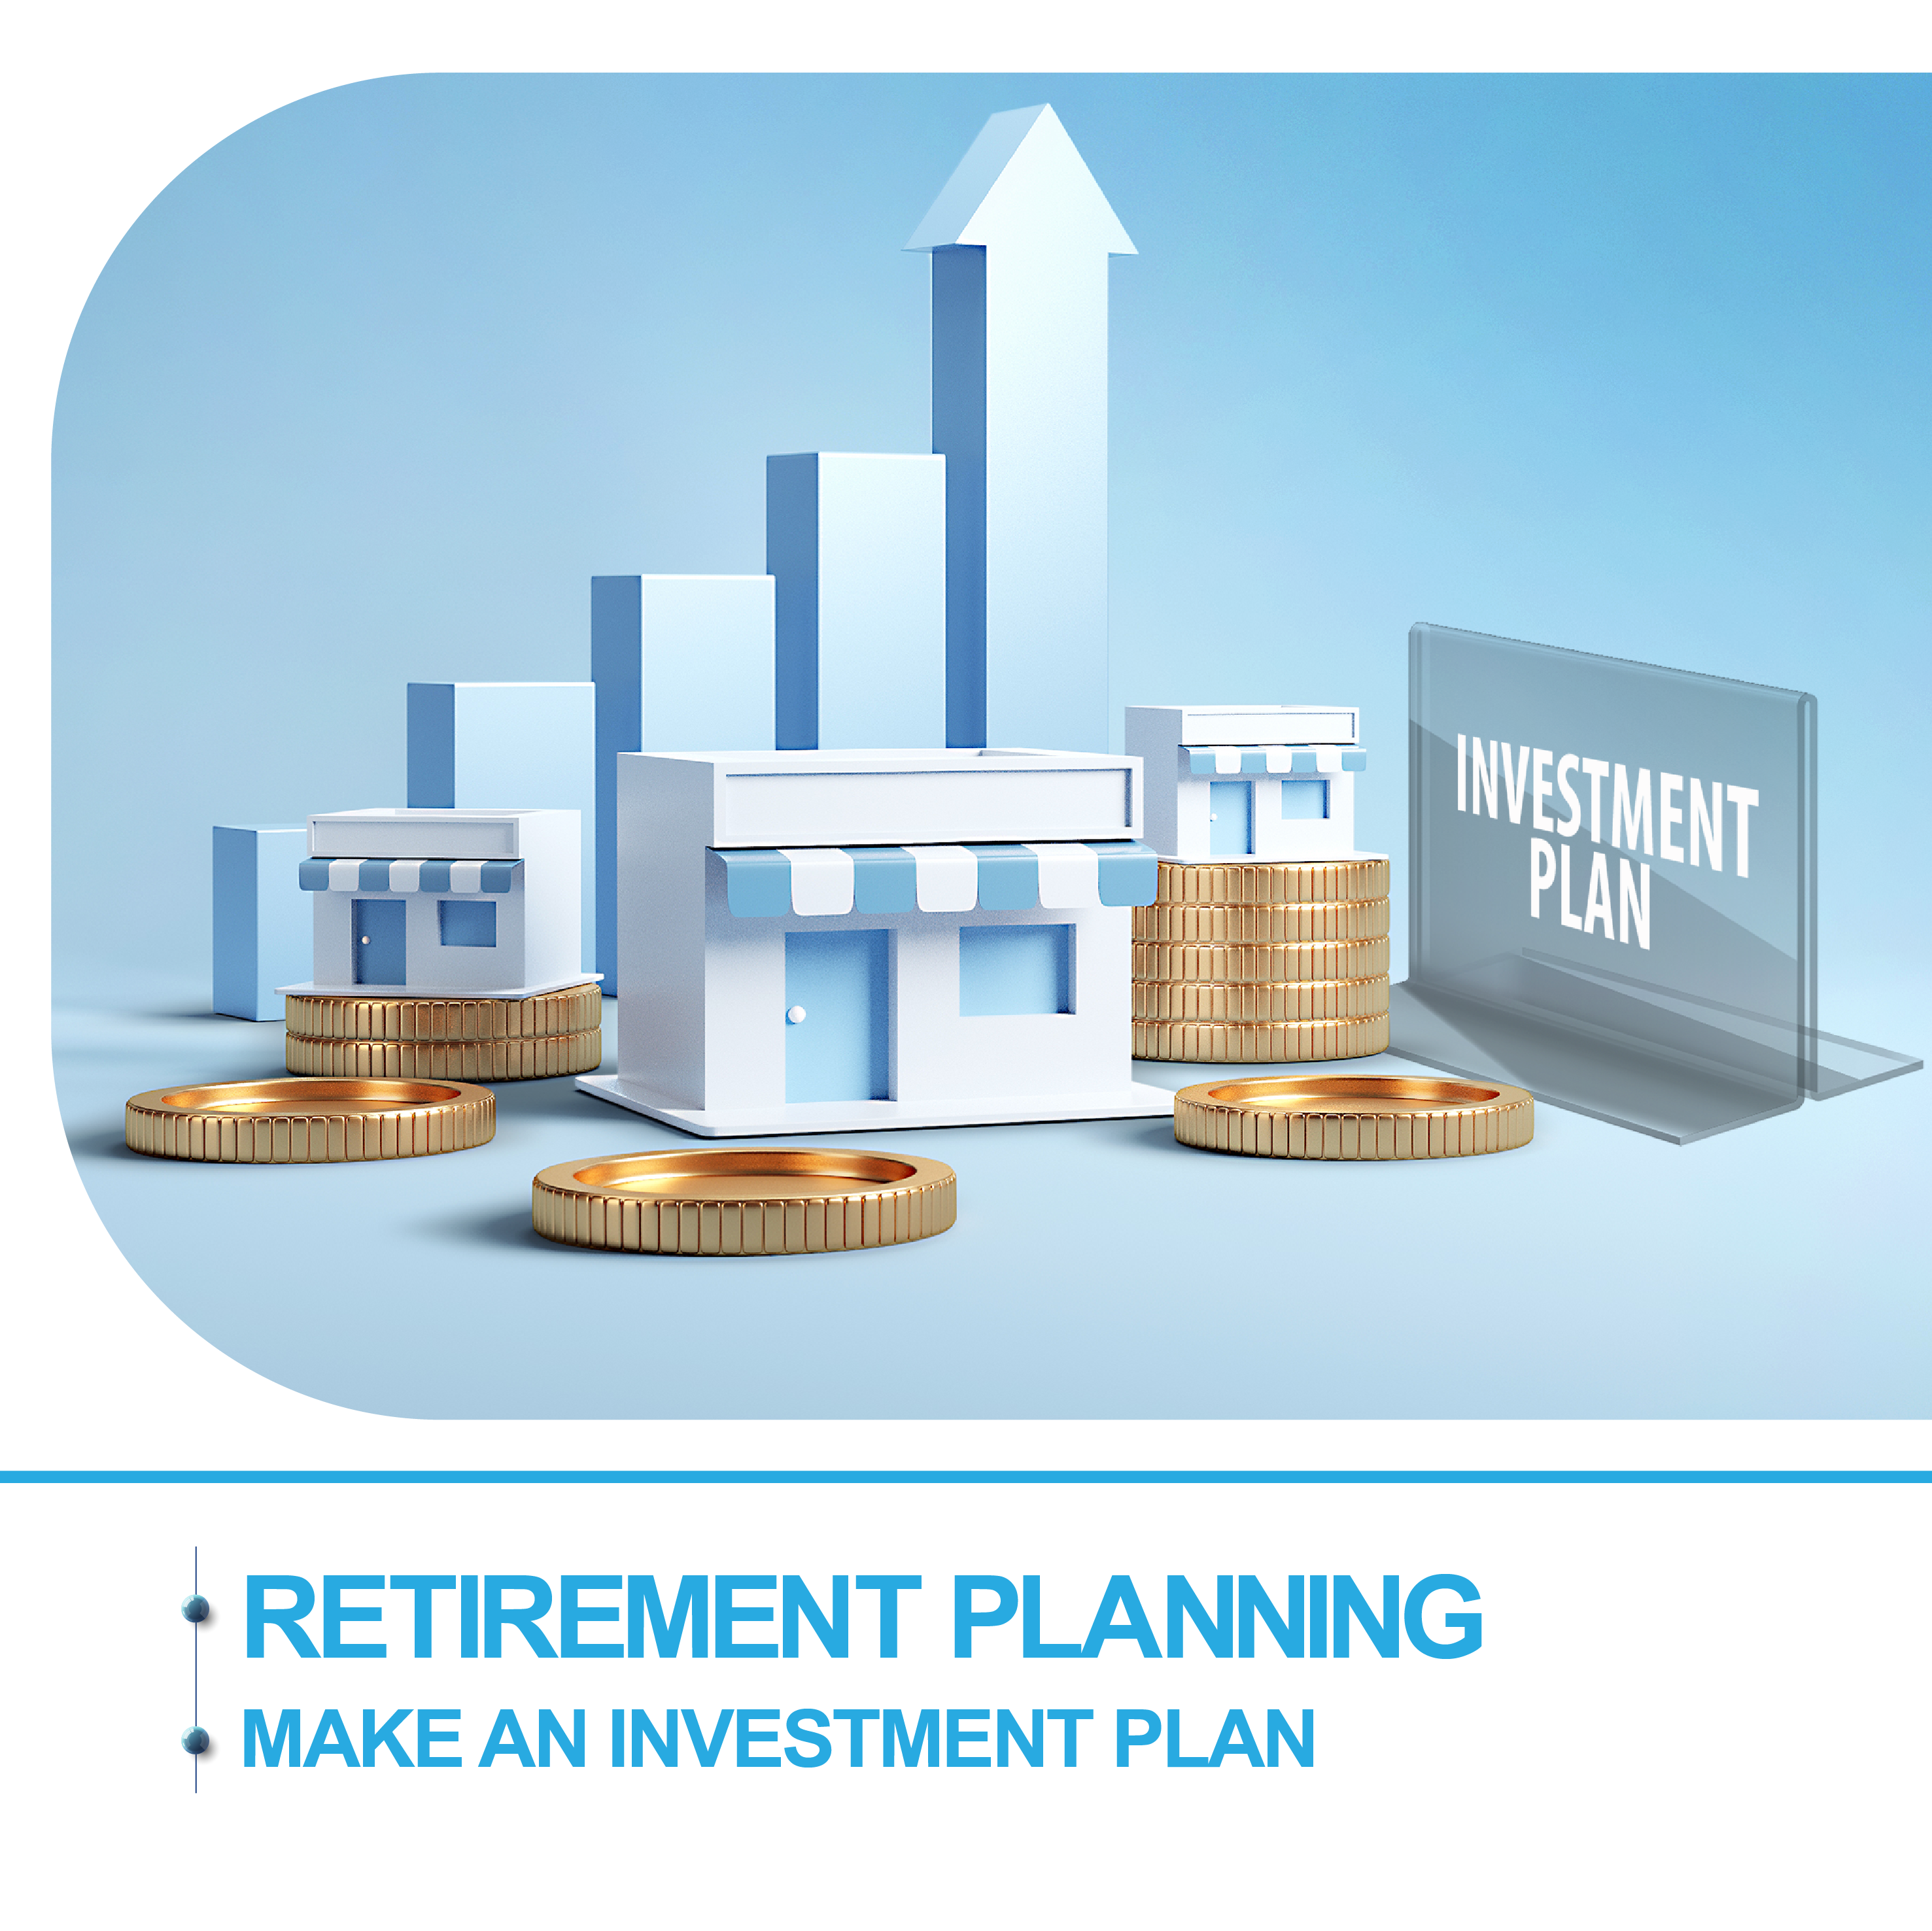 Make an investment plan